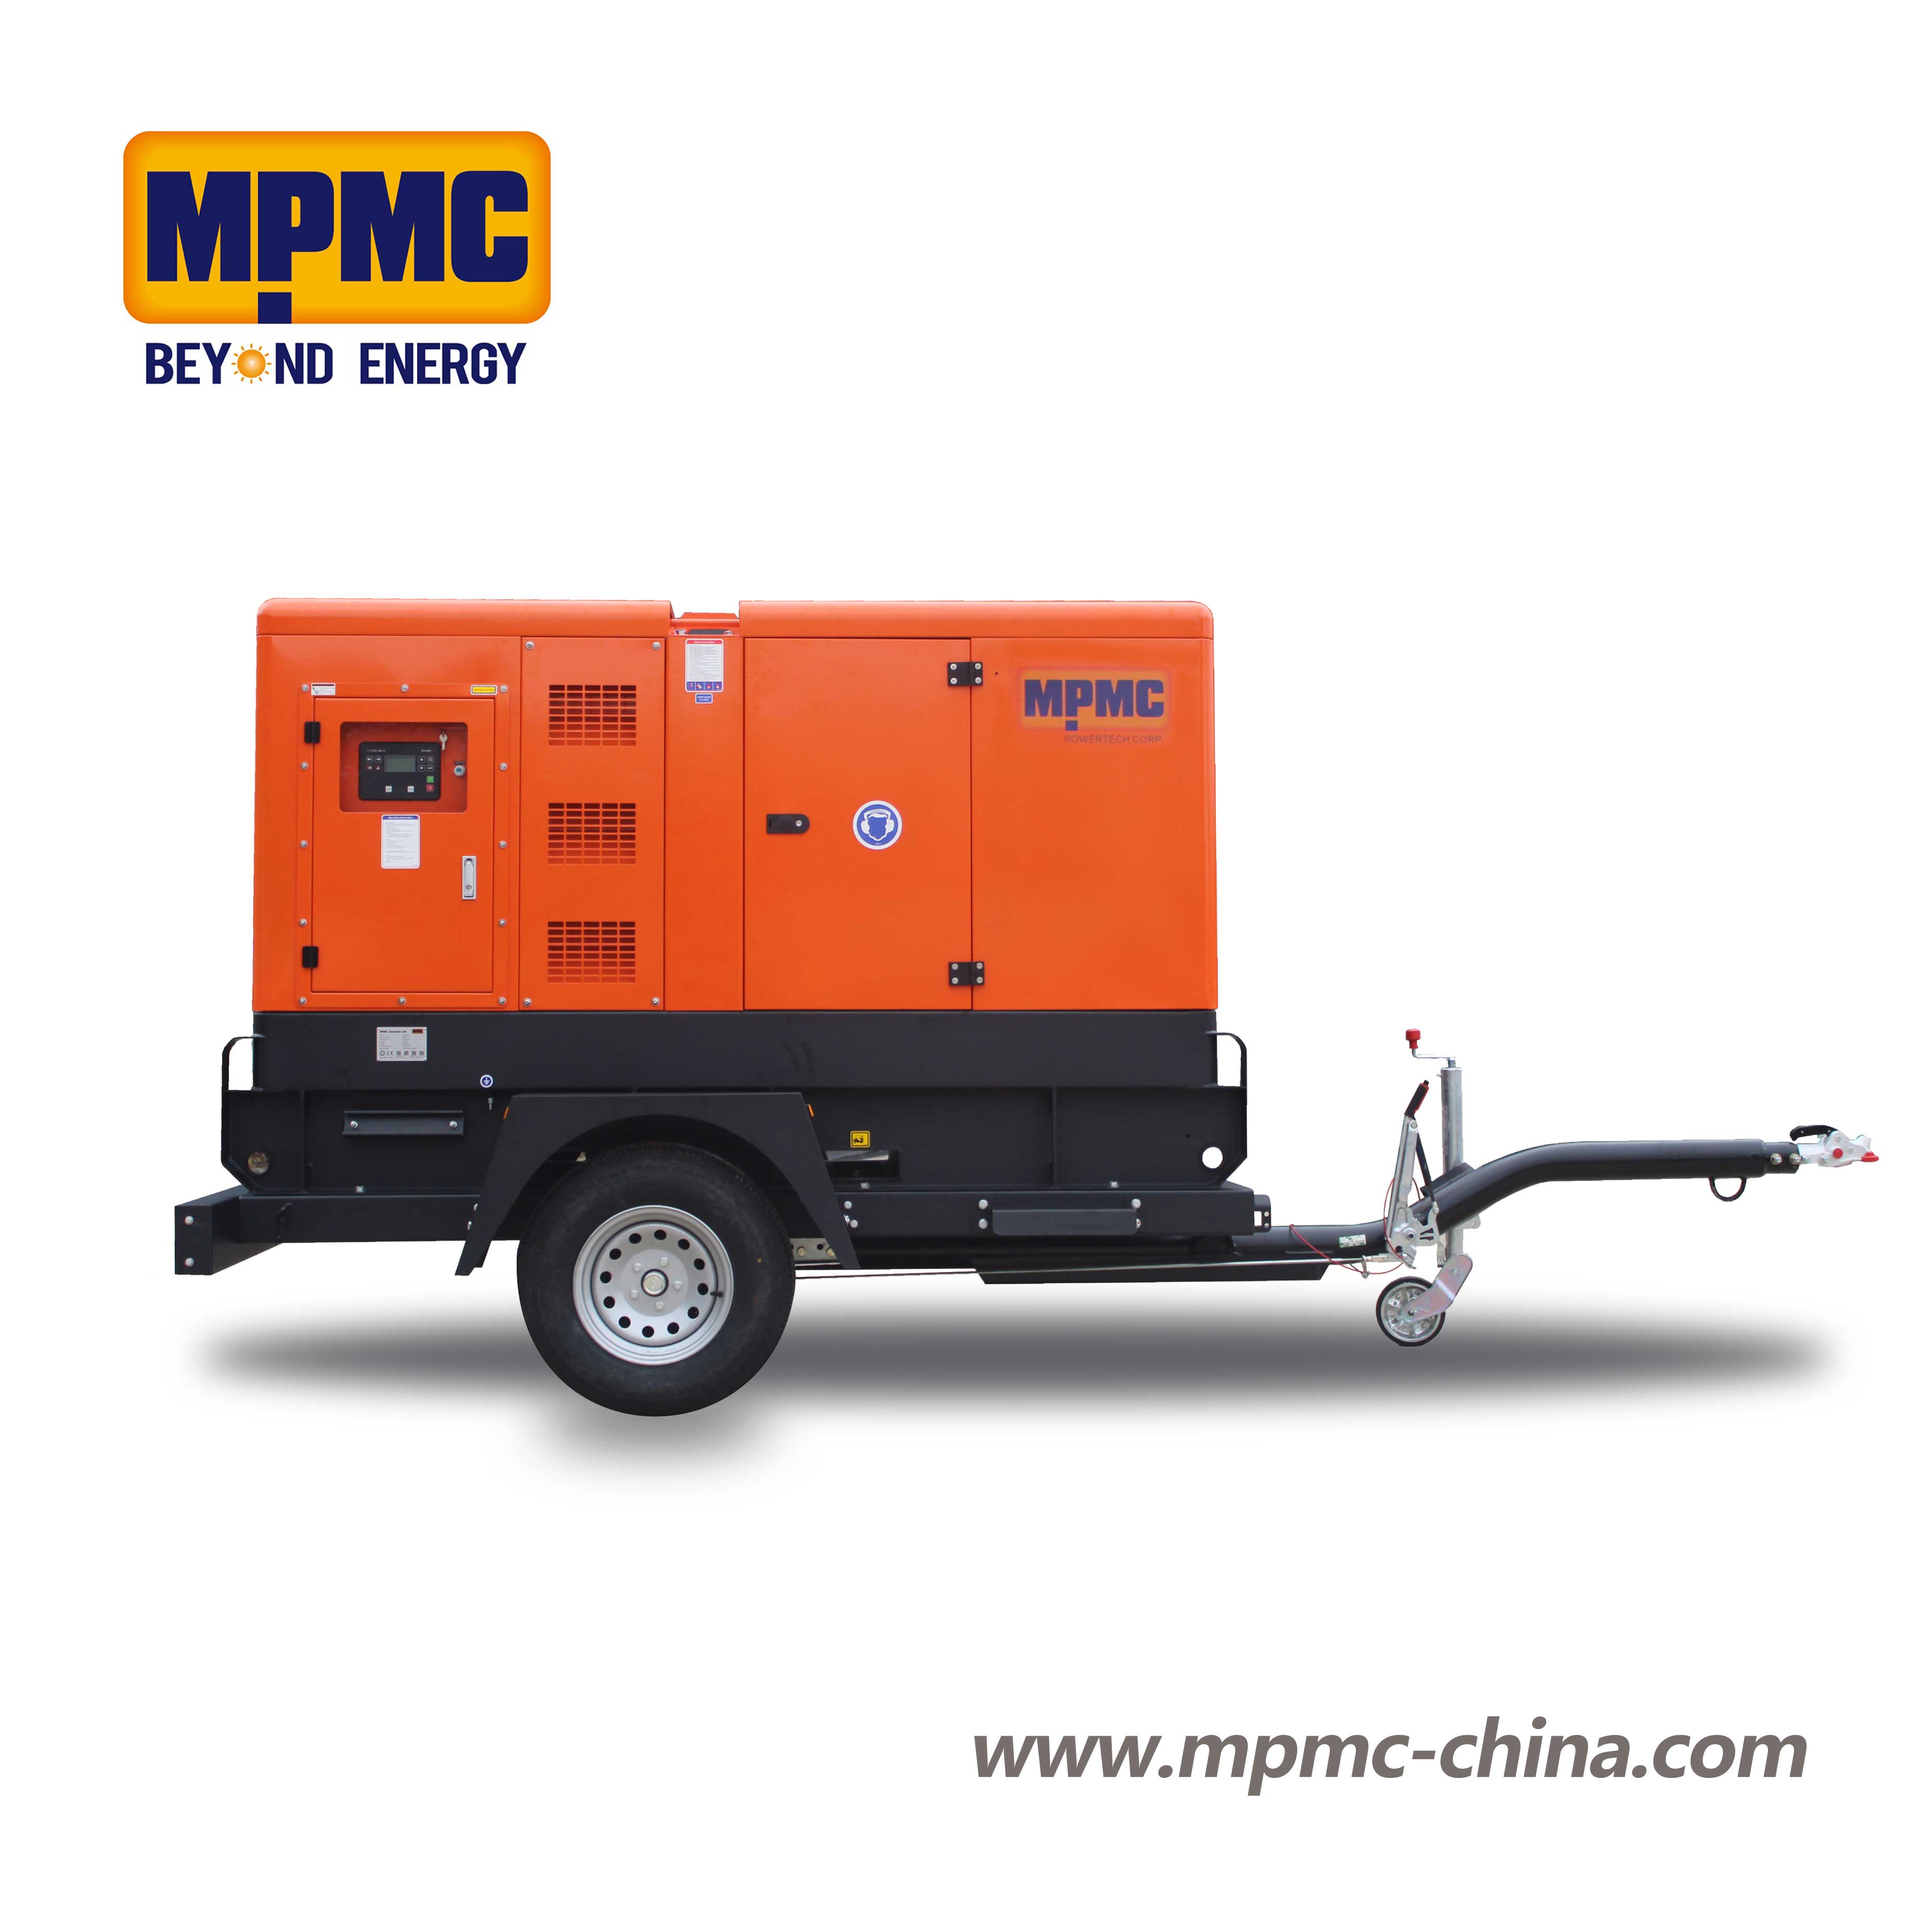 移动式柴油发电机组 Made By MPMC